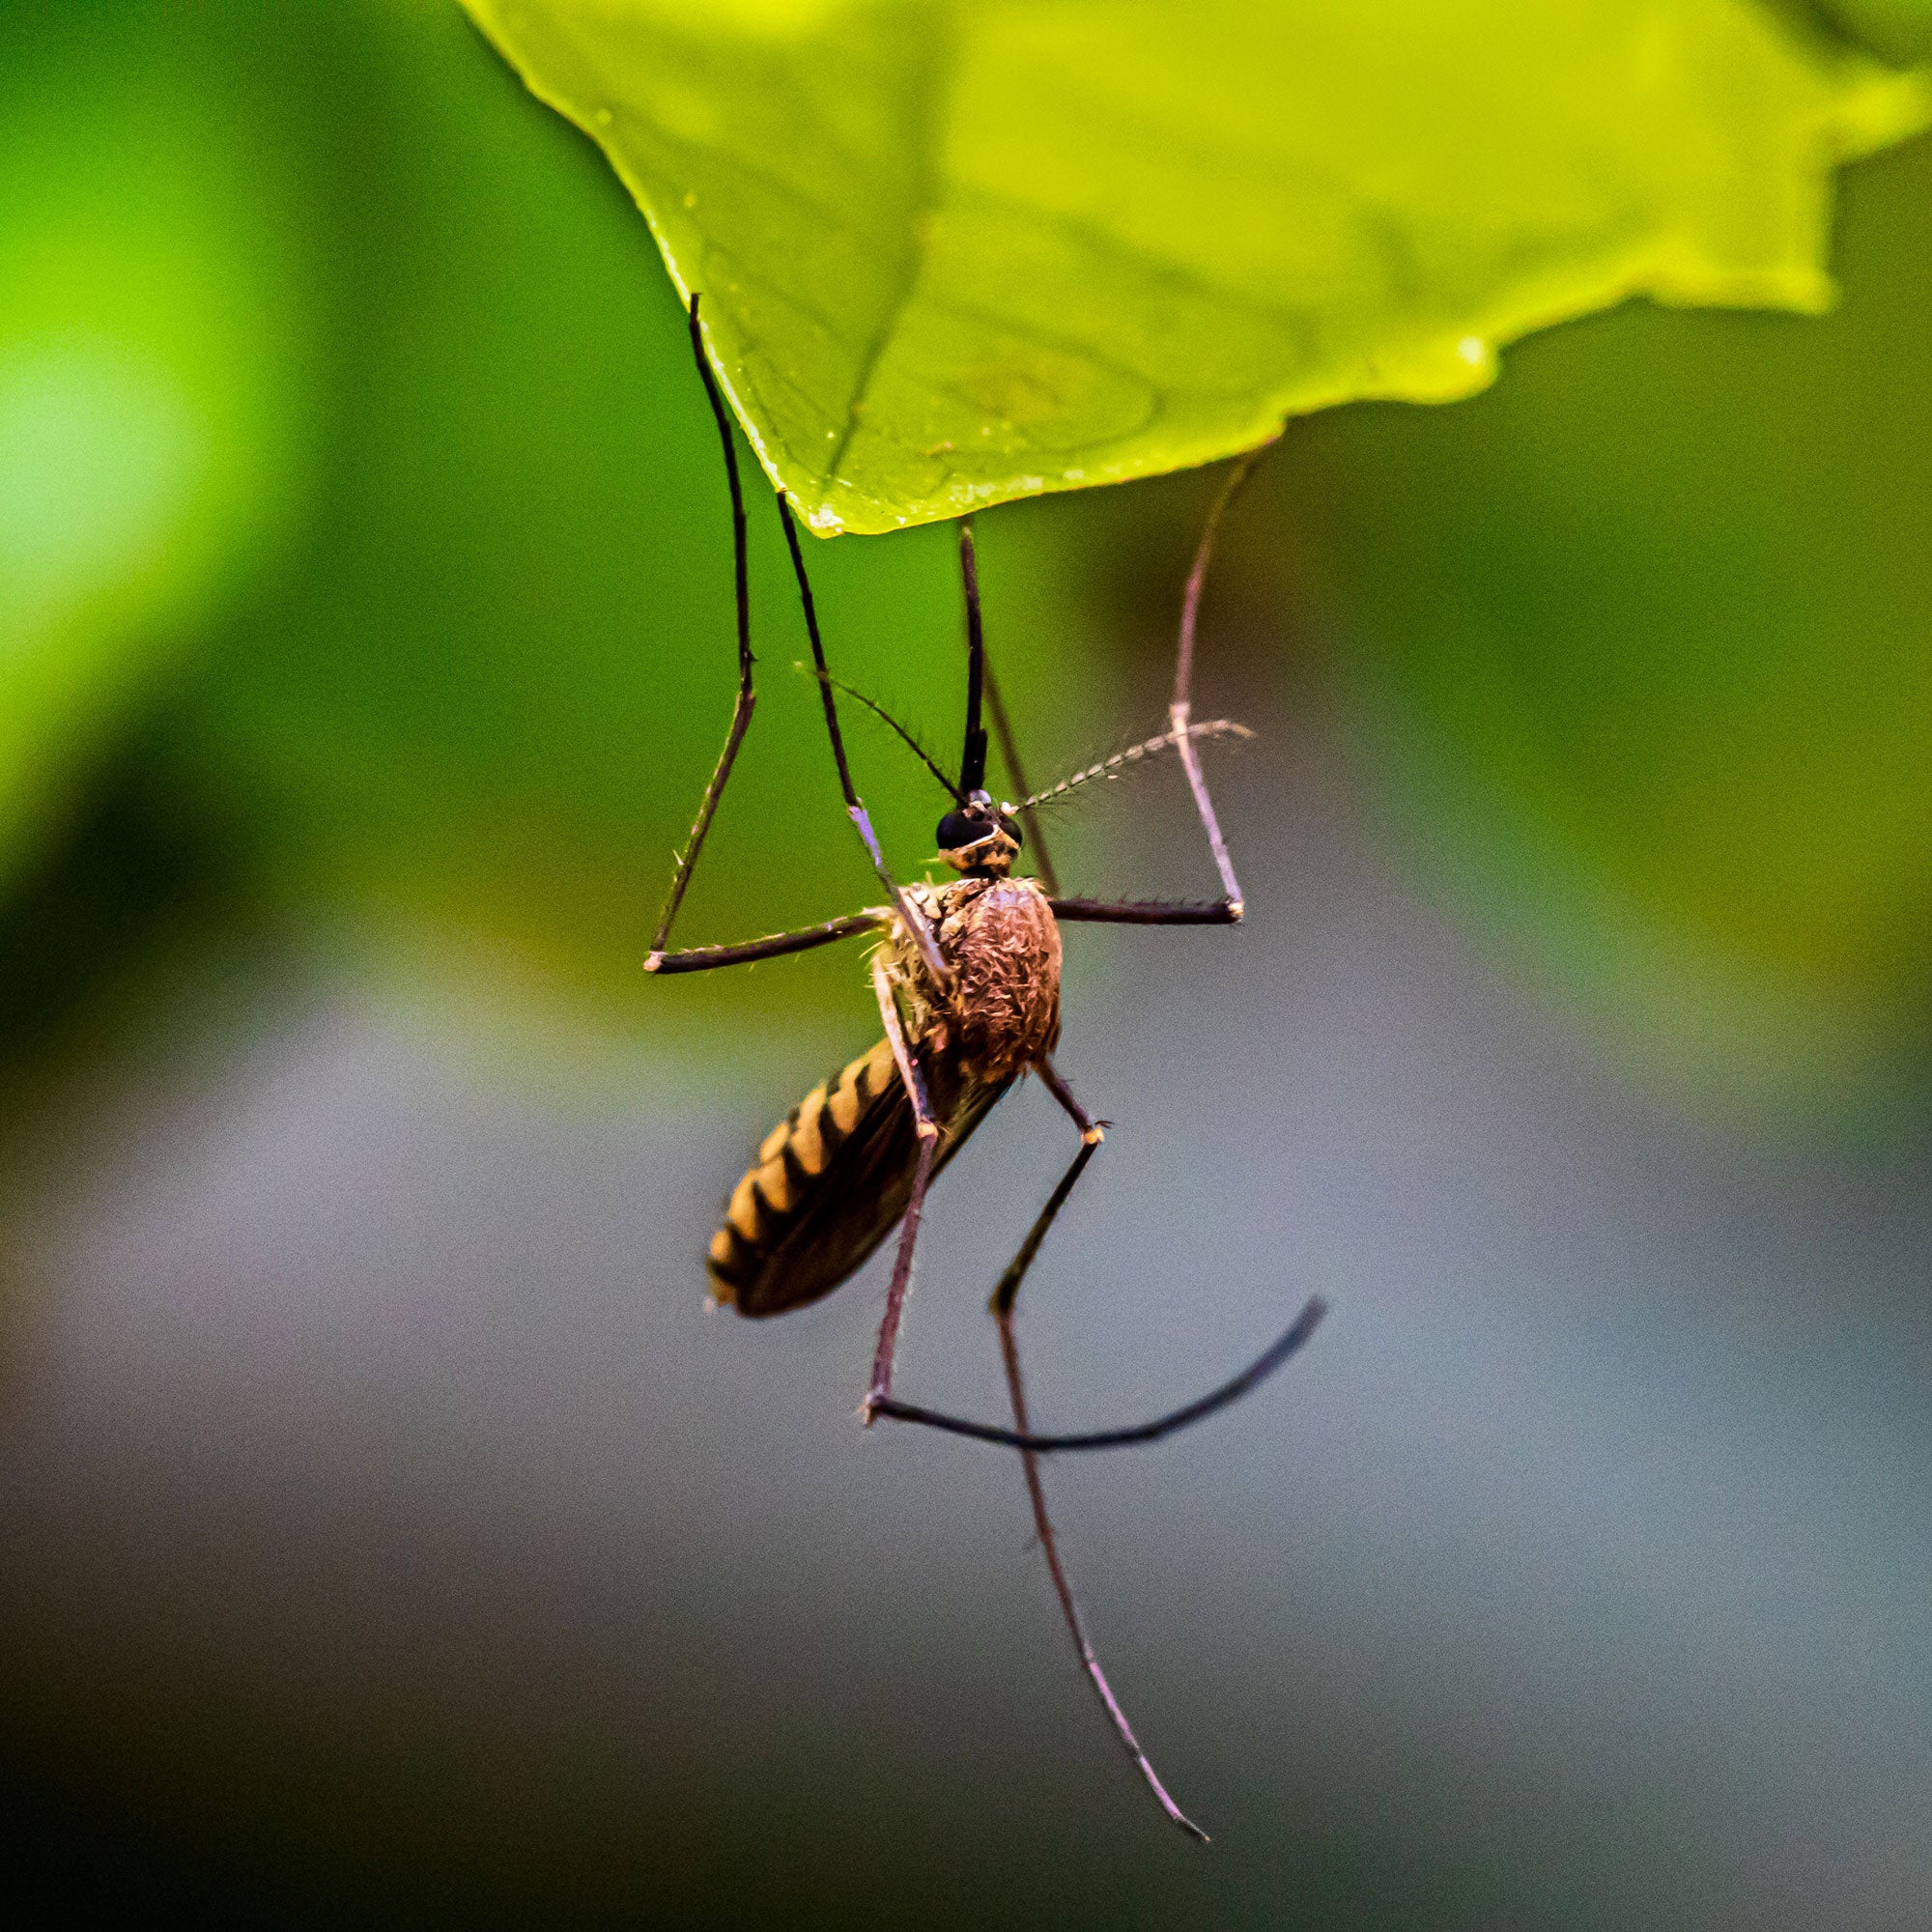 Comment se protéger des moustiques en voyage : conseils et astuces